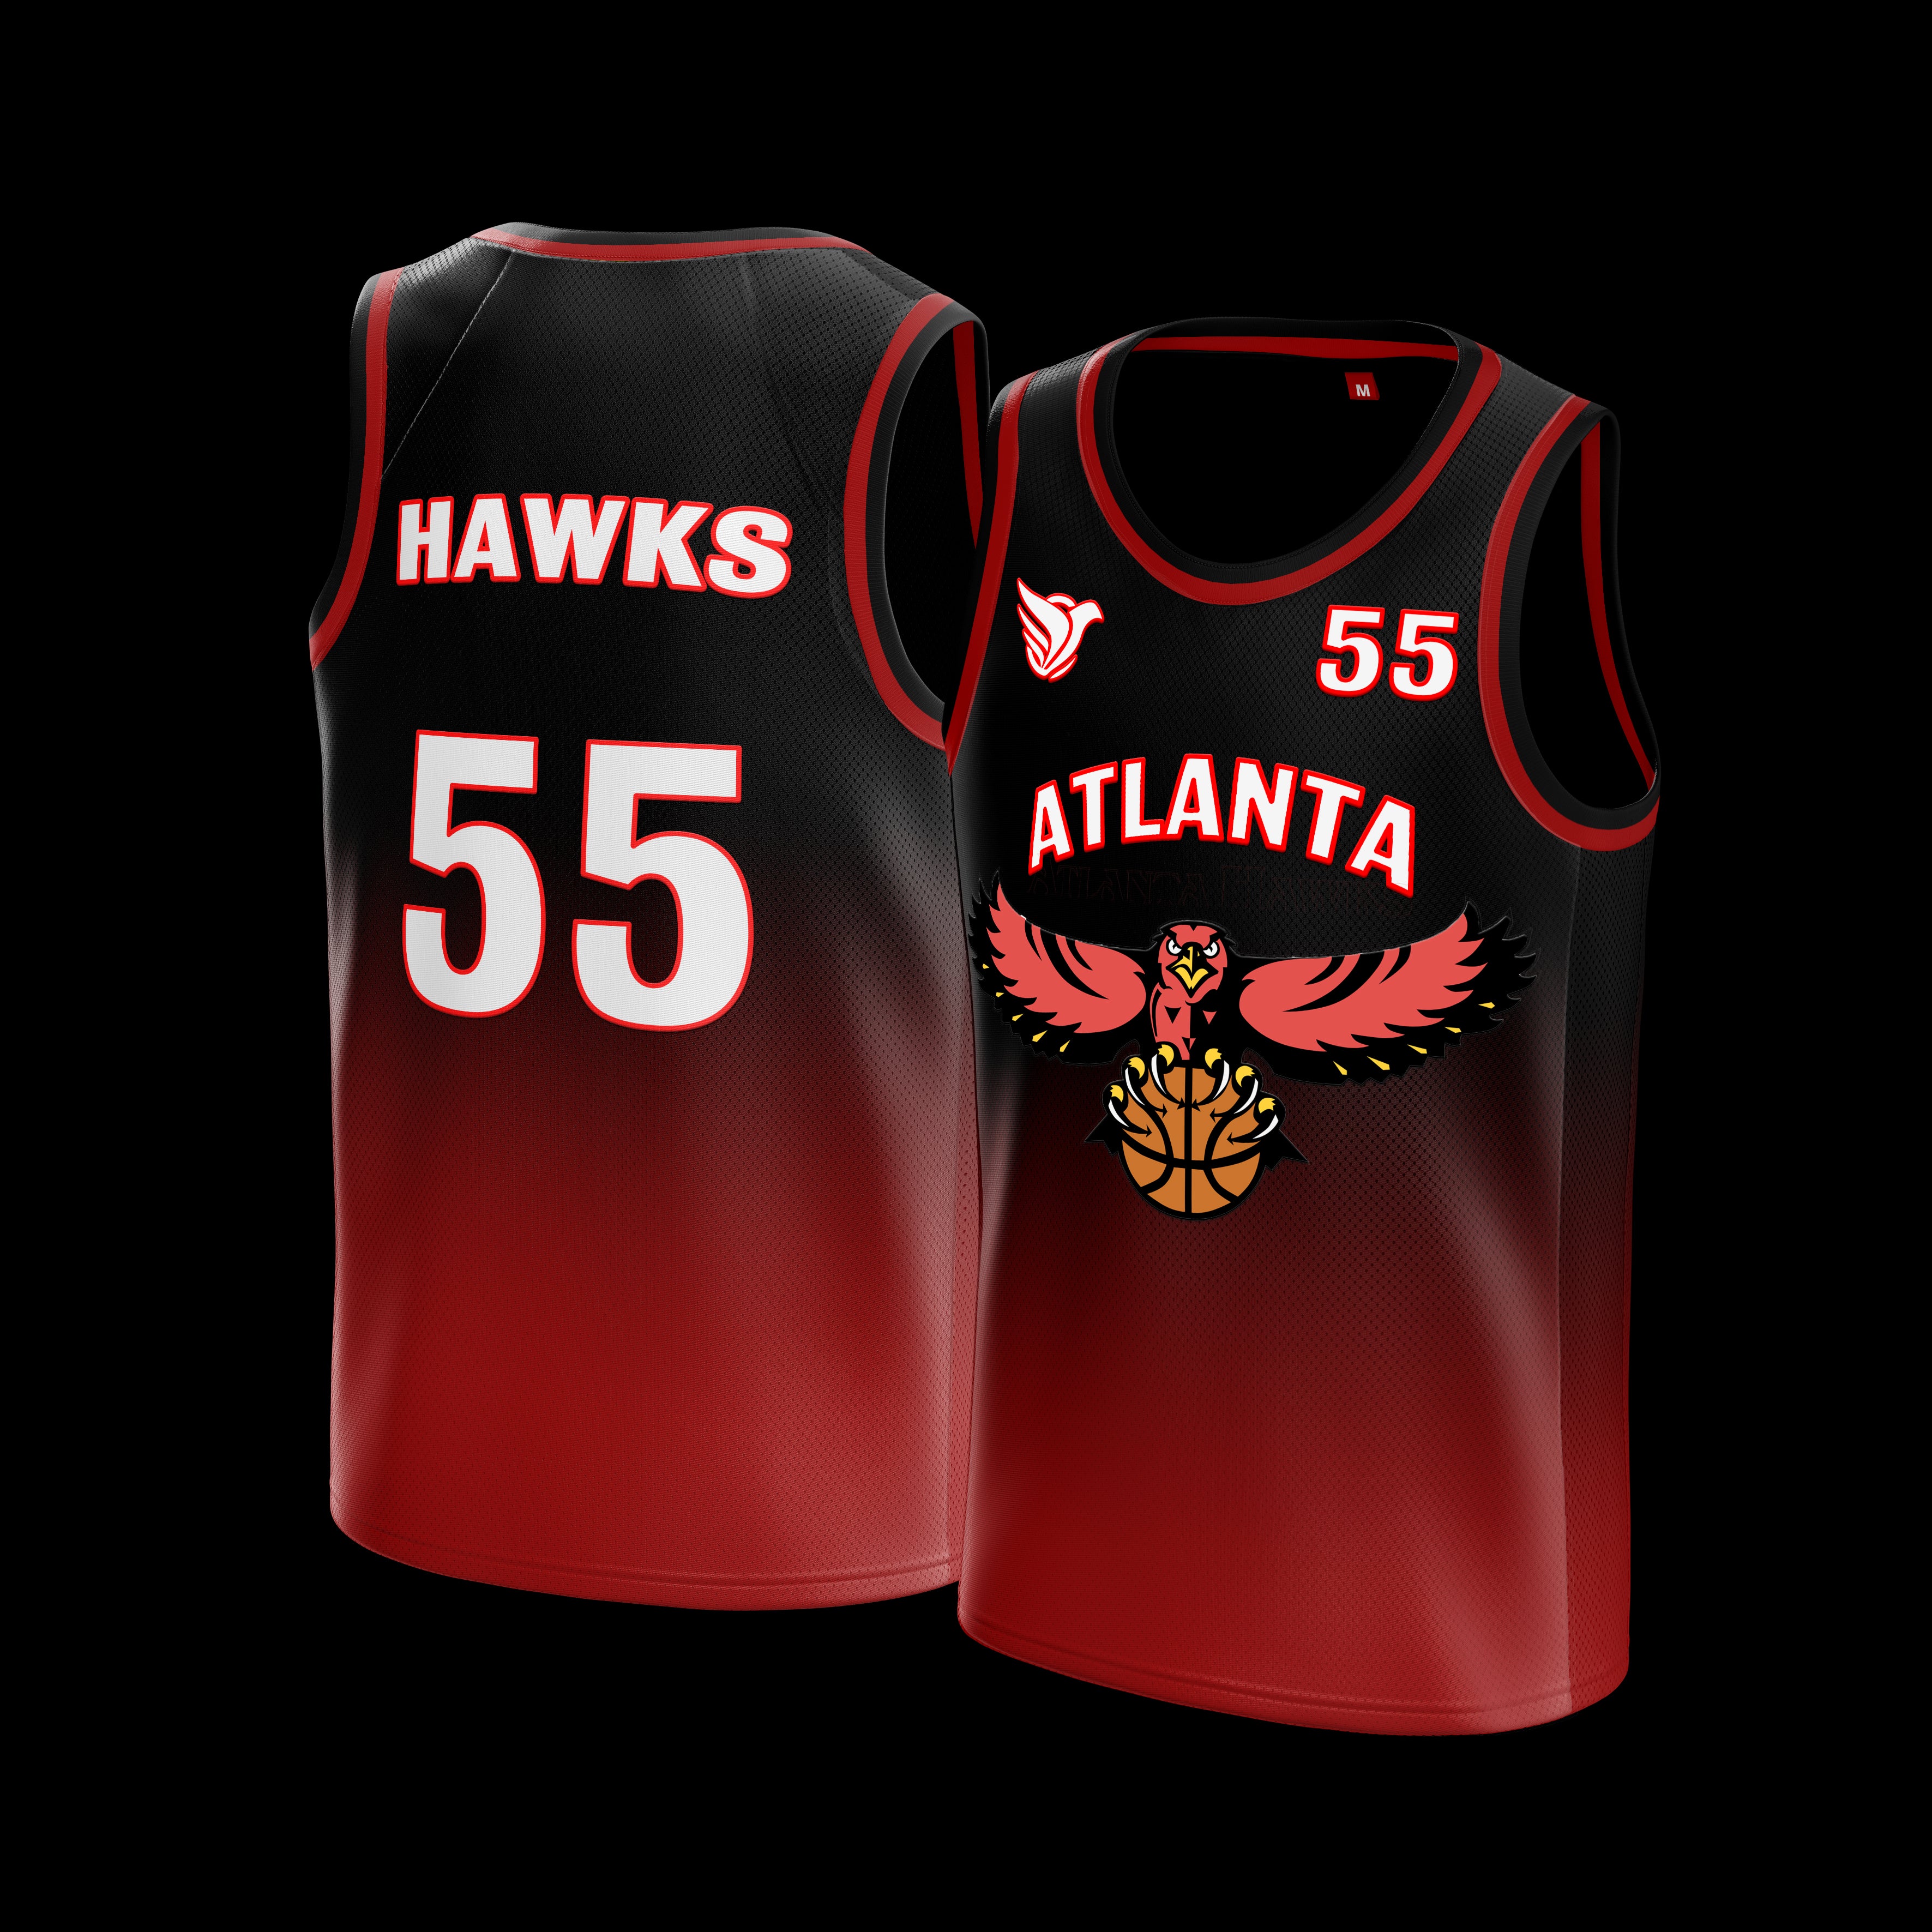 ATLANTA HAWKS Basketball JERSEY in $55. – DOVE JERSEYS